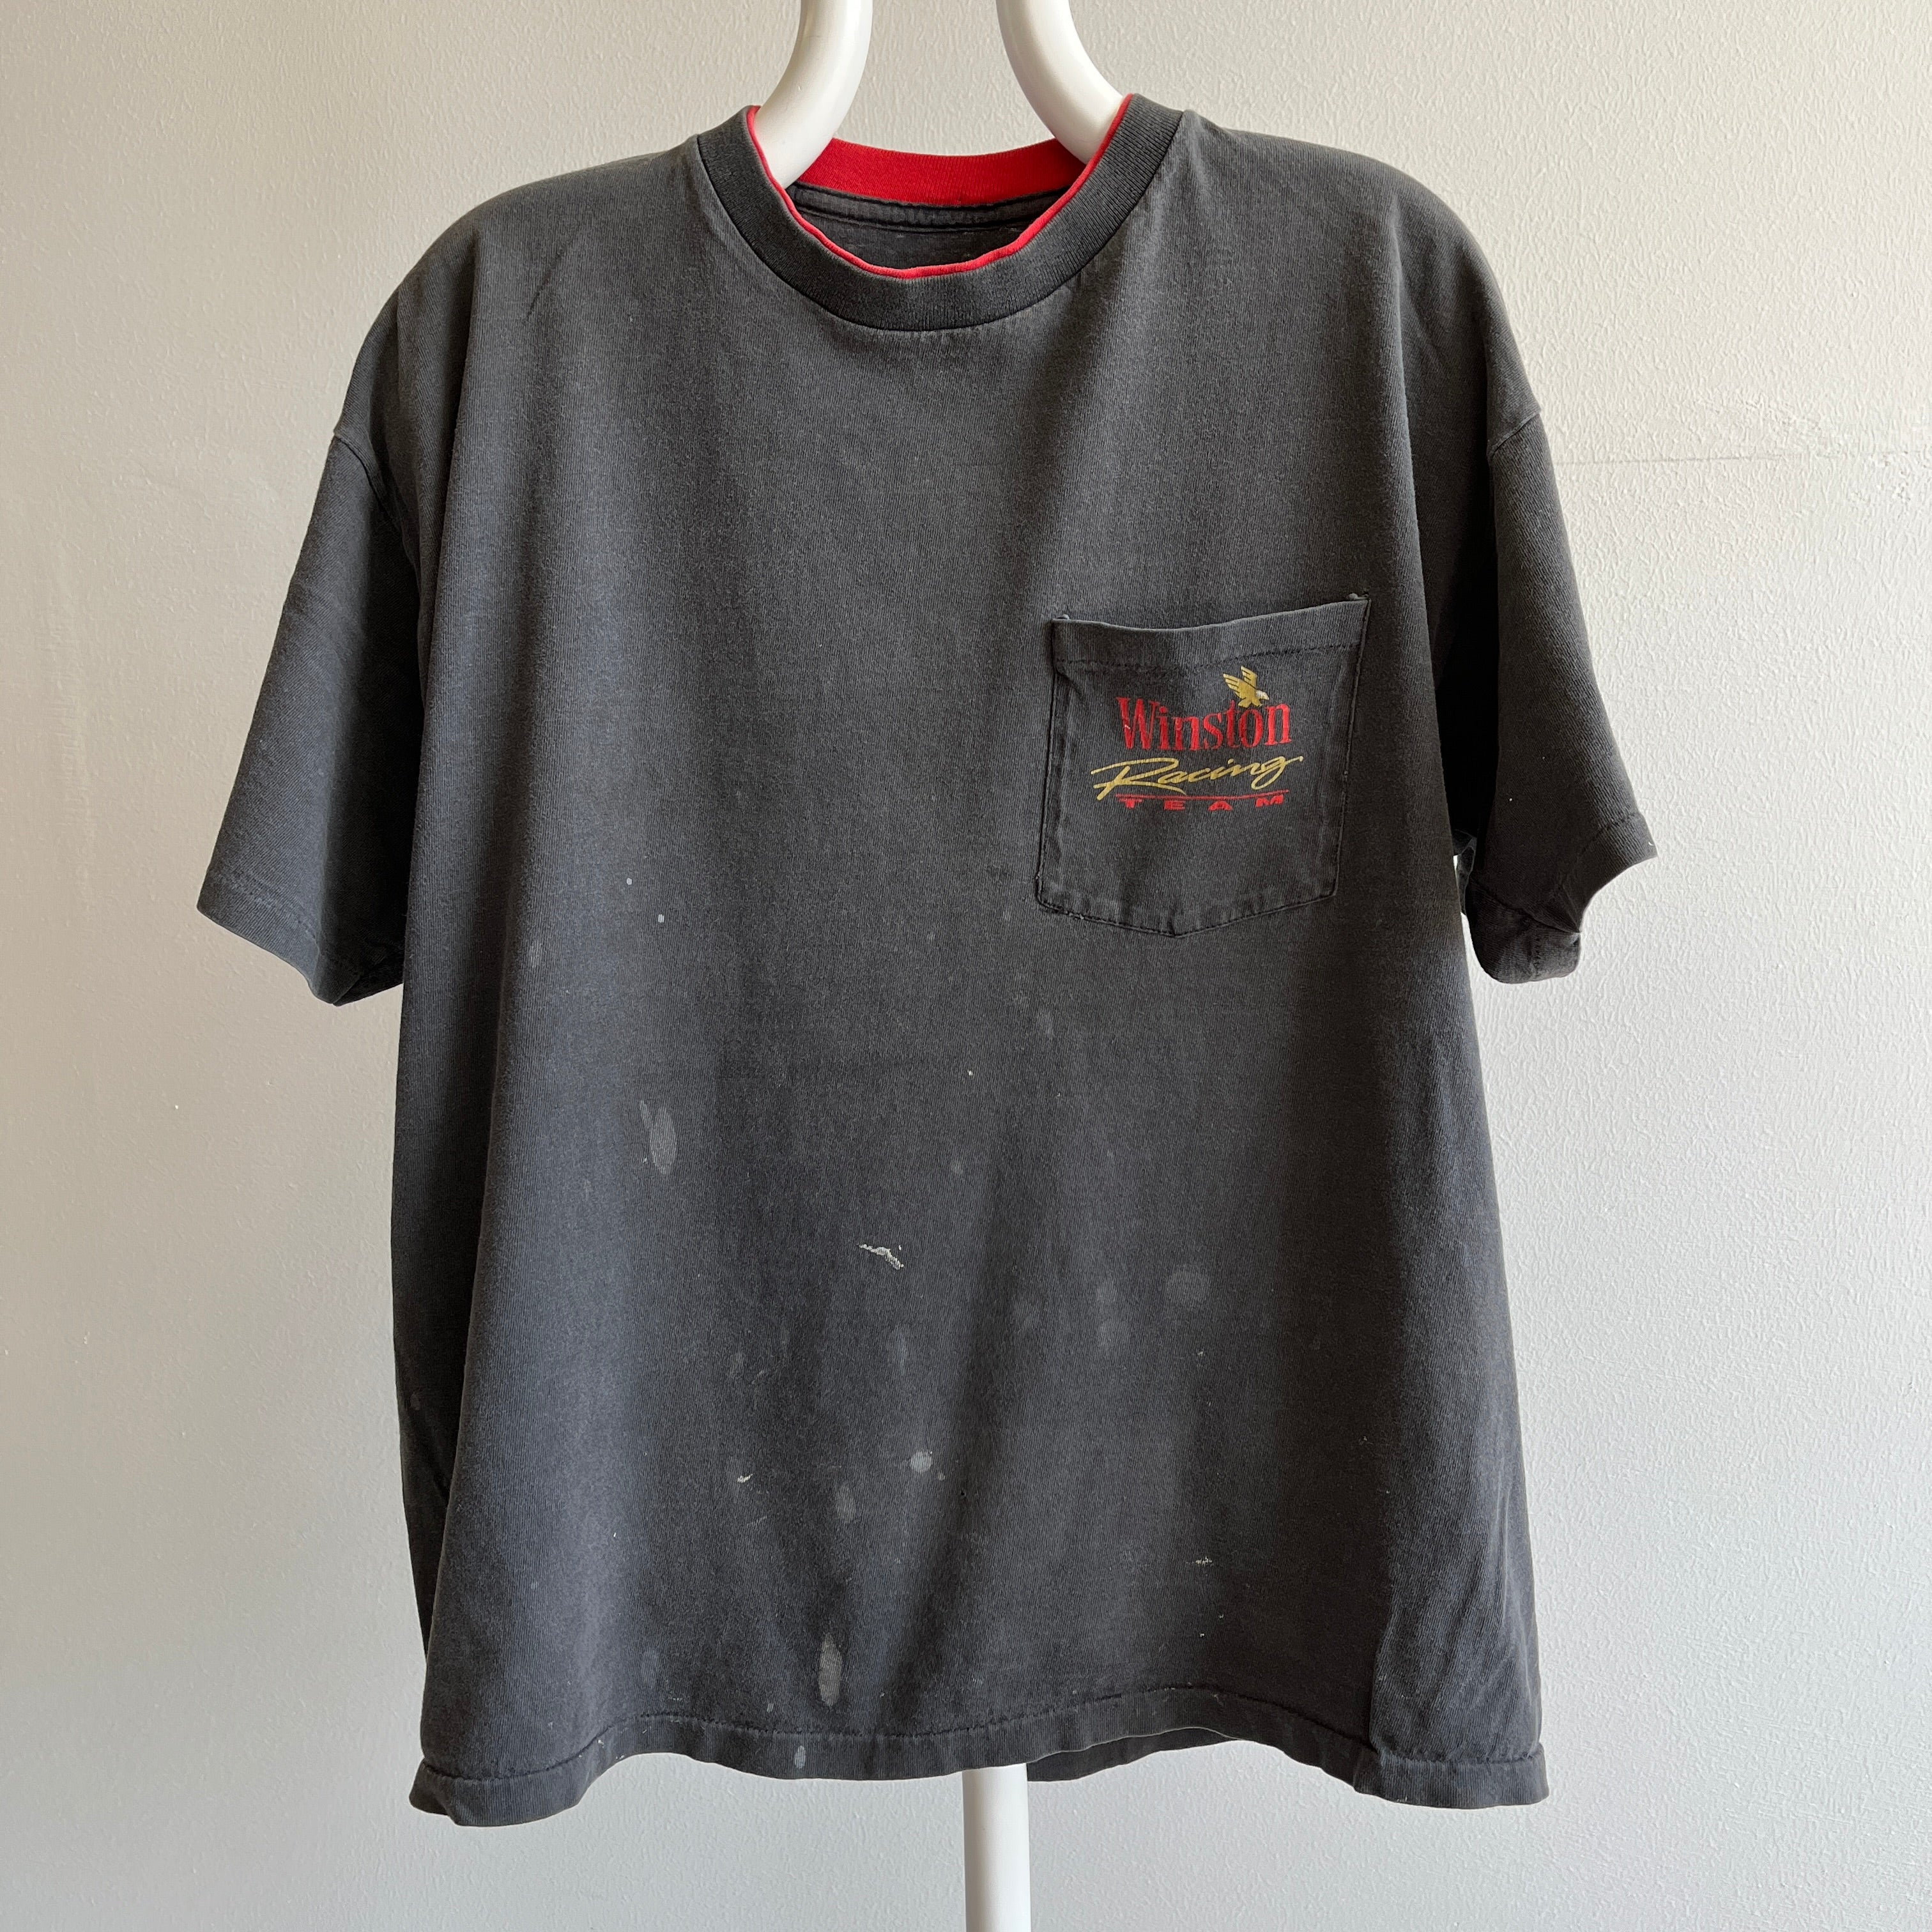 T-shirt à poche Super Stained Winston Racing des années 1990